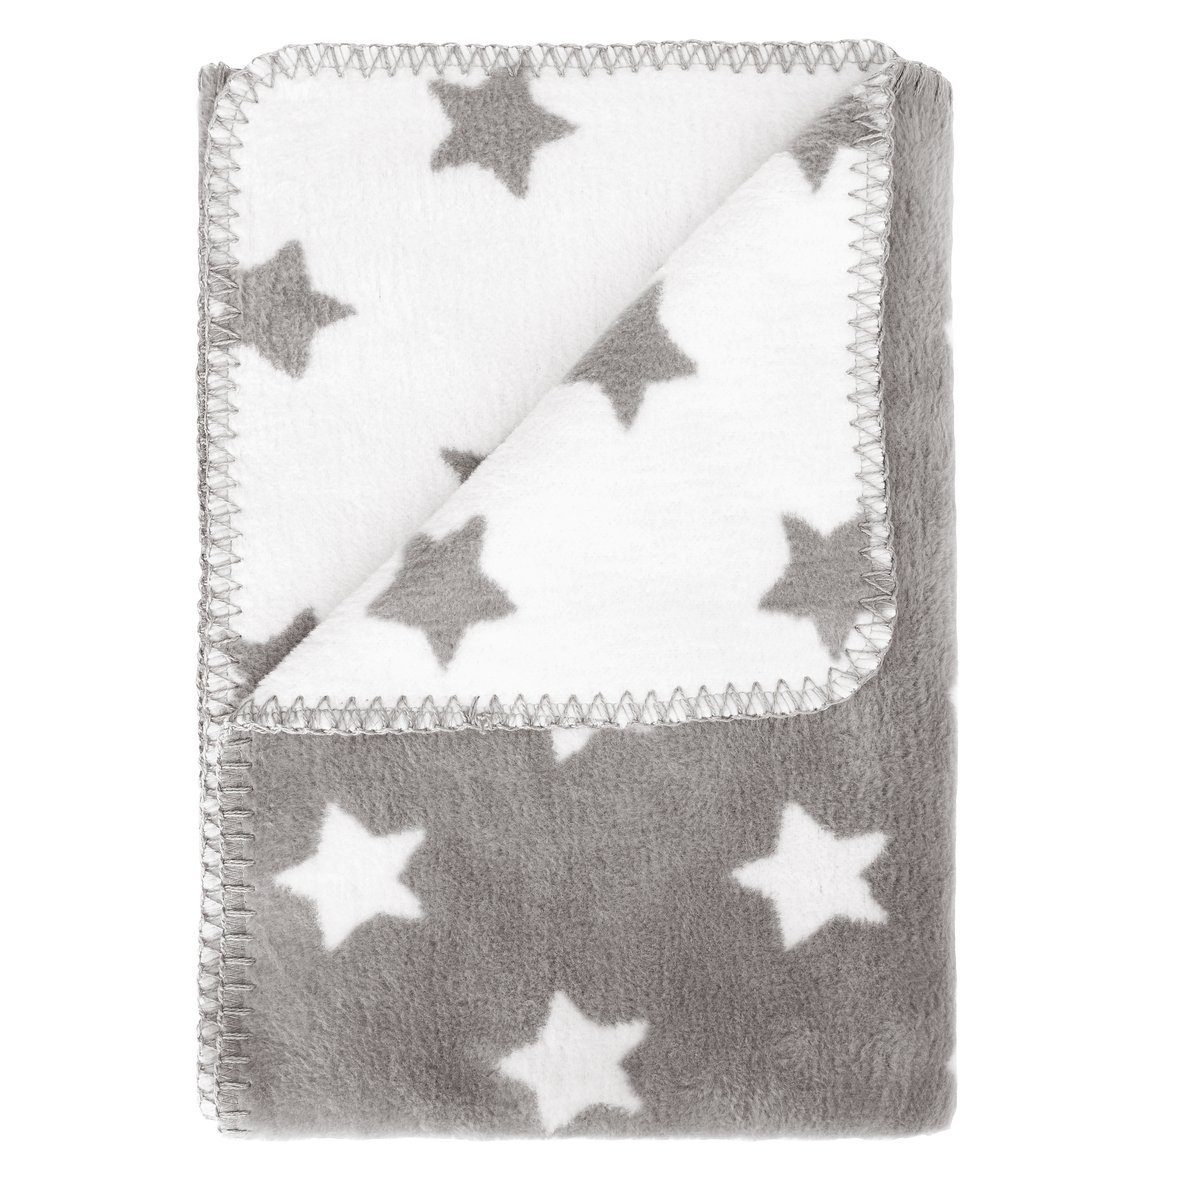 Babydecke perfekt für Kinderwagen, Babyschale, Krabbeldecke, Babybett, kids&me, kuschelig weiche Decke für Babys mit Sternen - ÖKOTEX grau